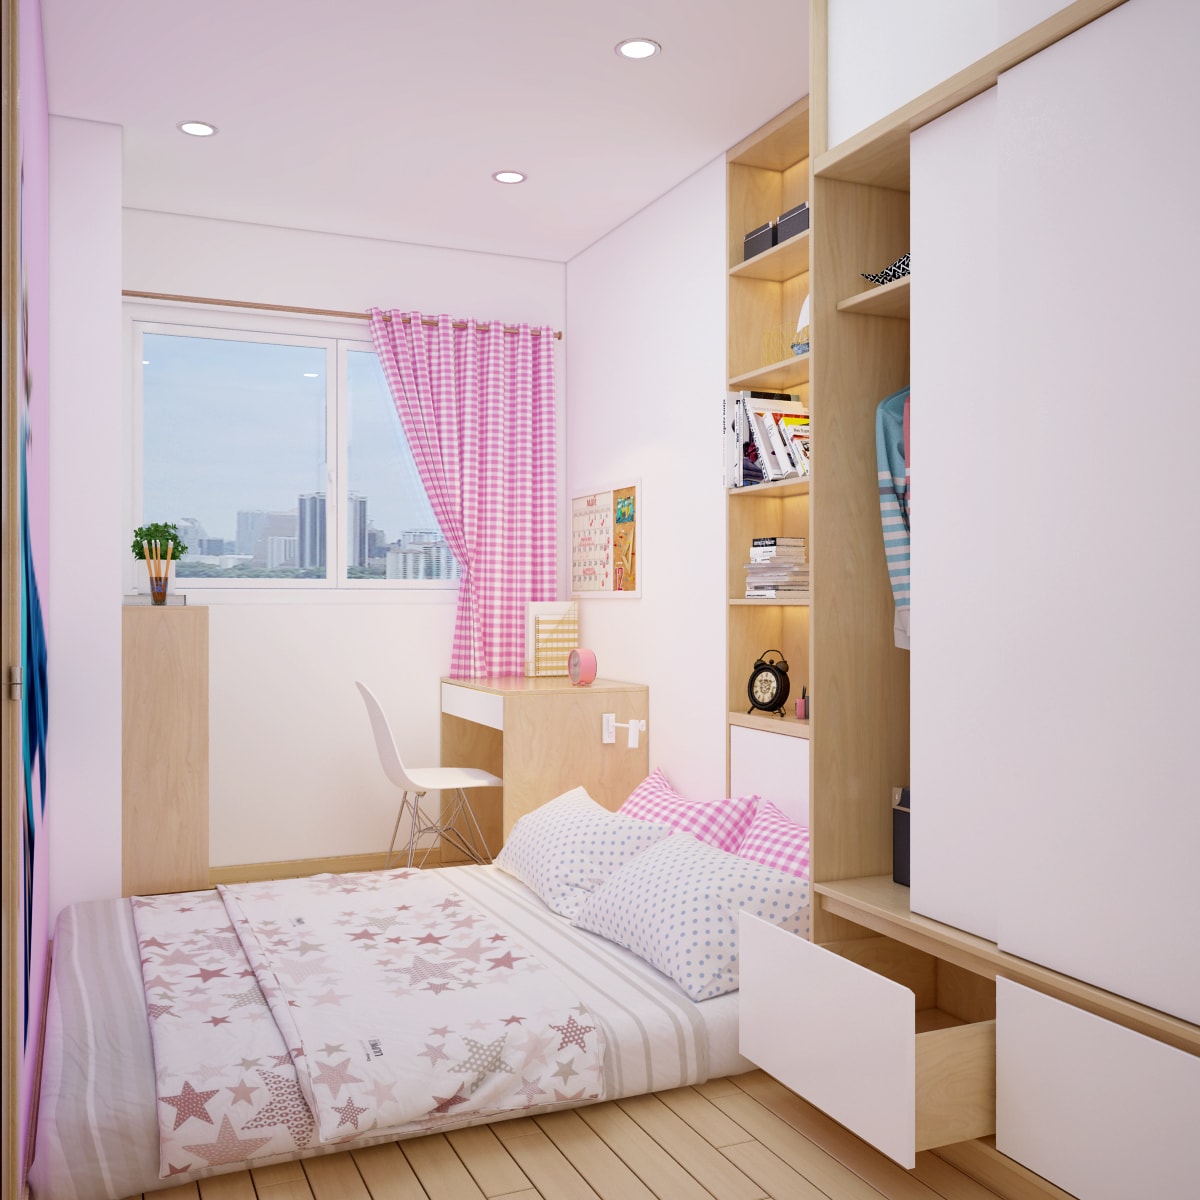 View 3 - Thiết kế nội thất phòng ngủ bé gái chung cư